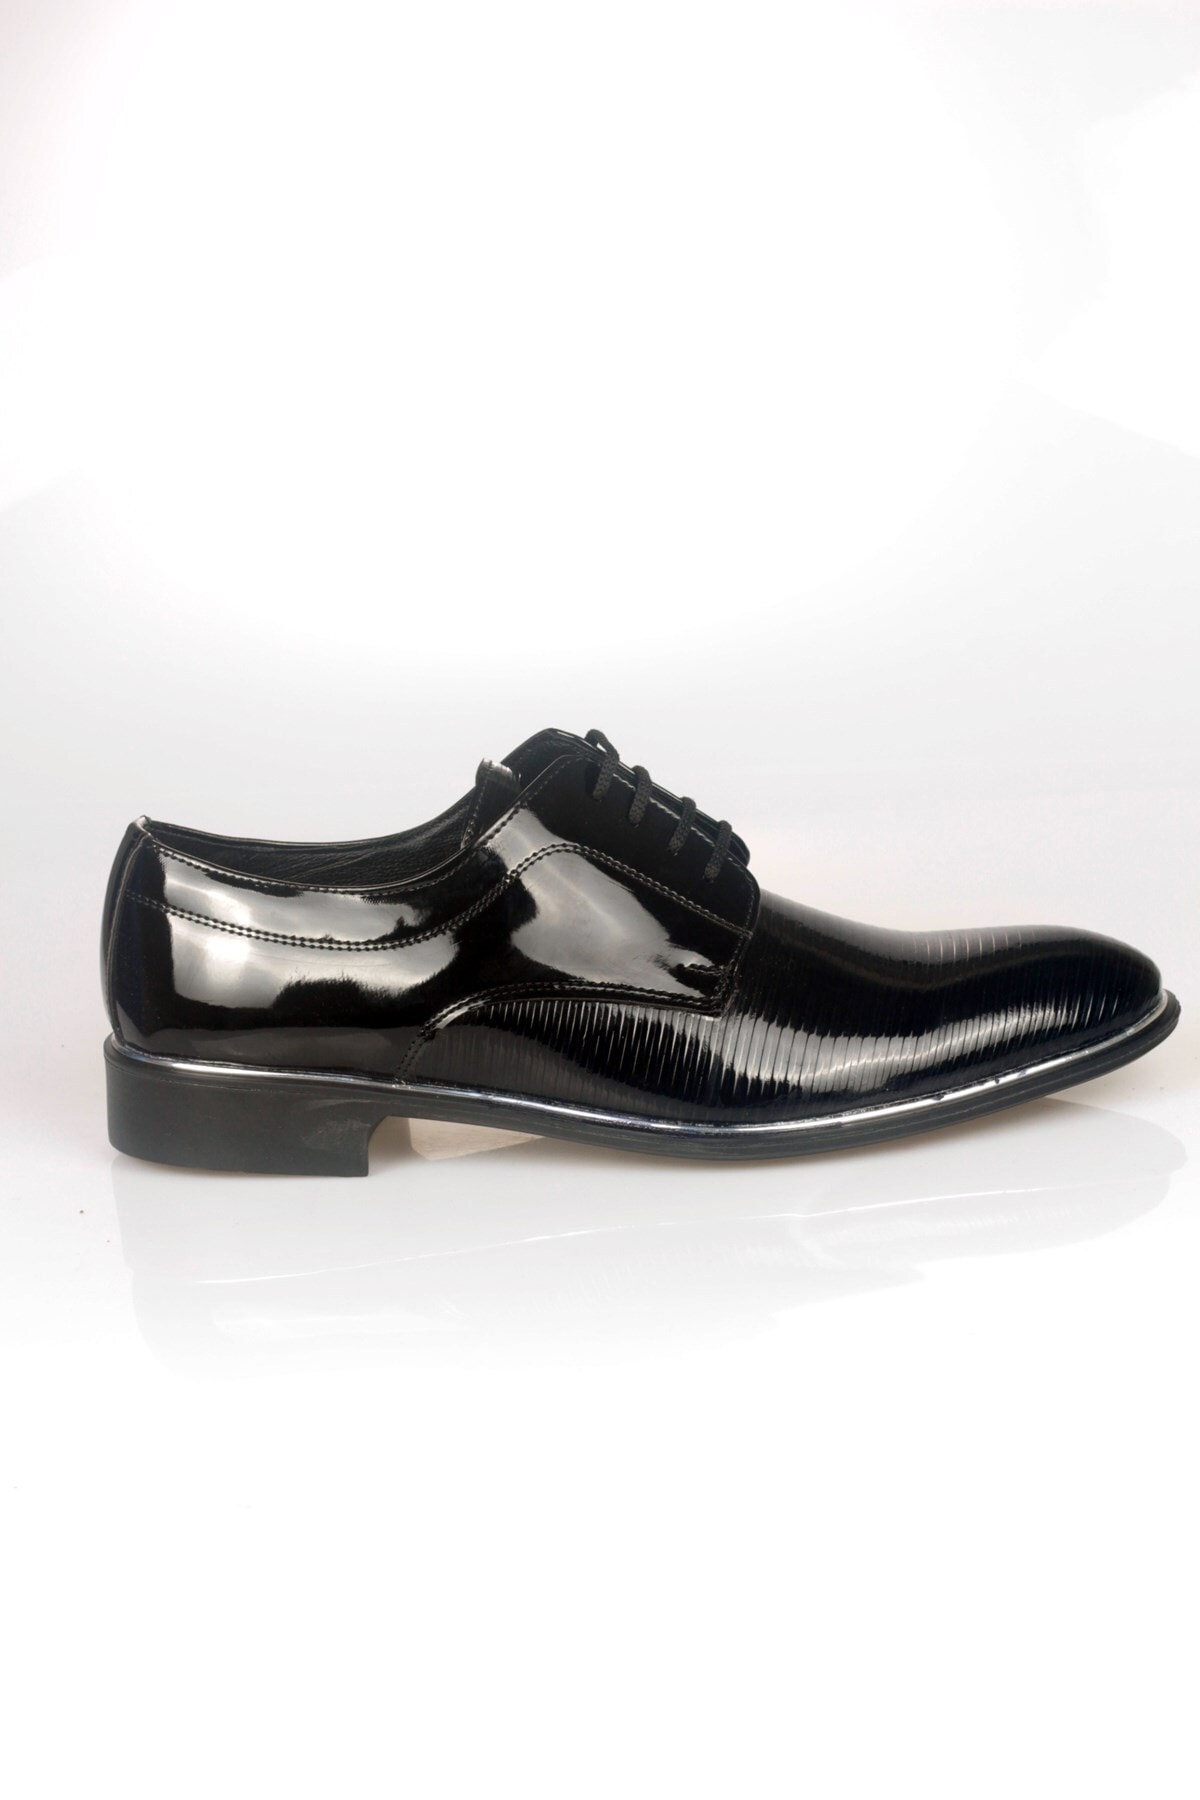 ayakkabiyolla Baskı Detaylı Damatlık Siyah Rugan Klasik Erkek Ayakkabı